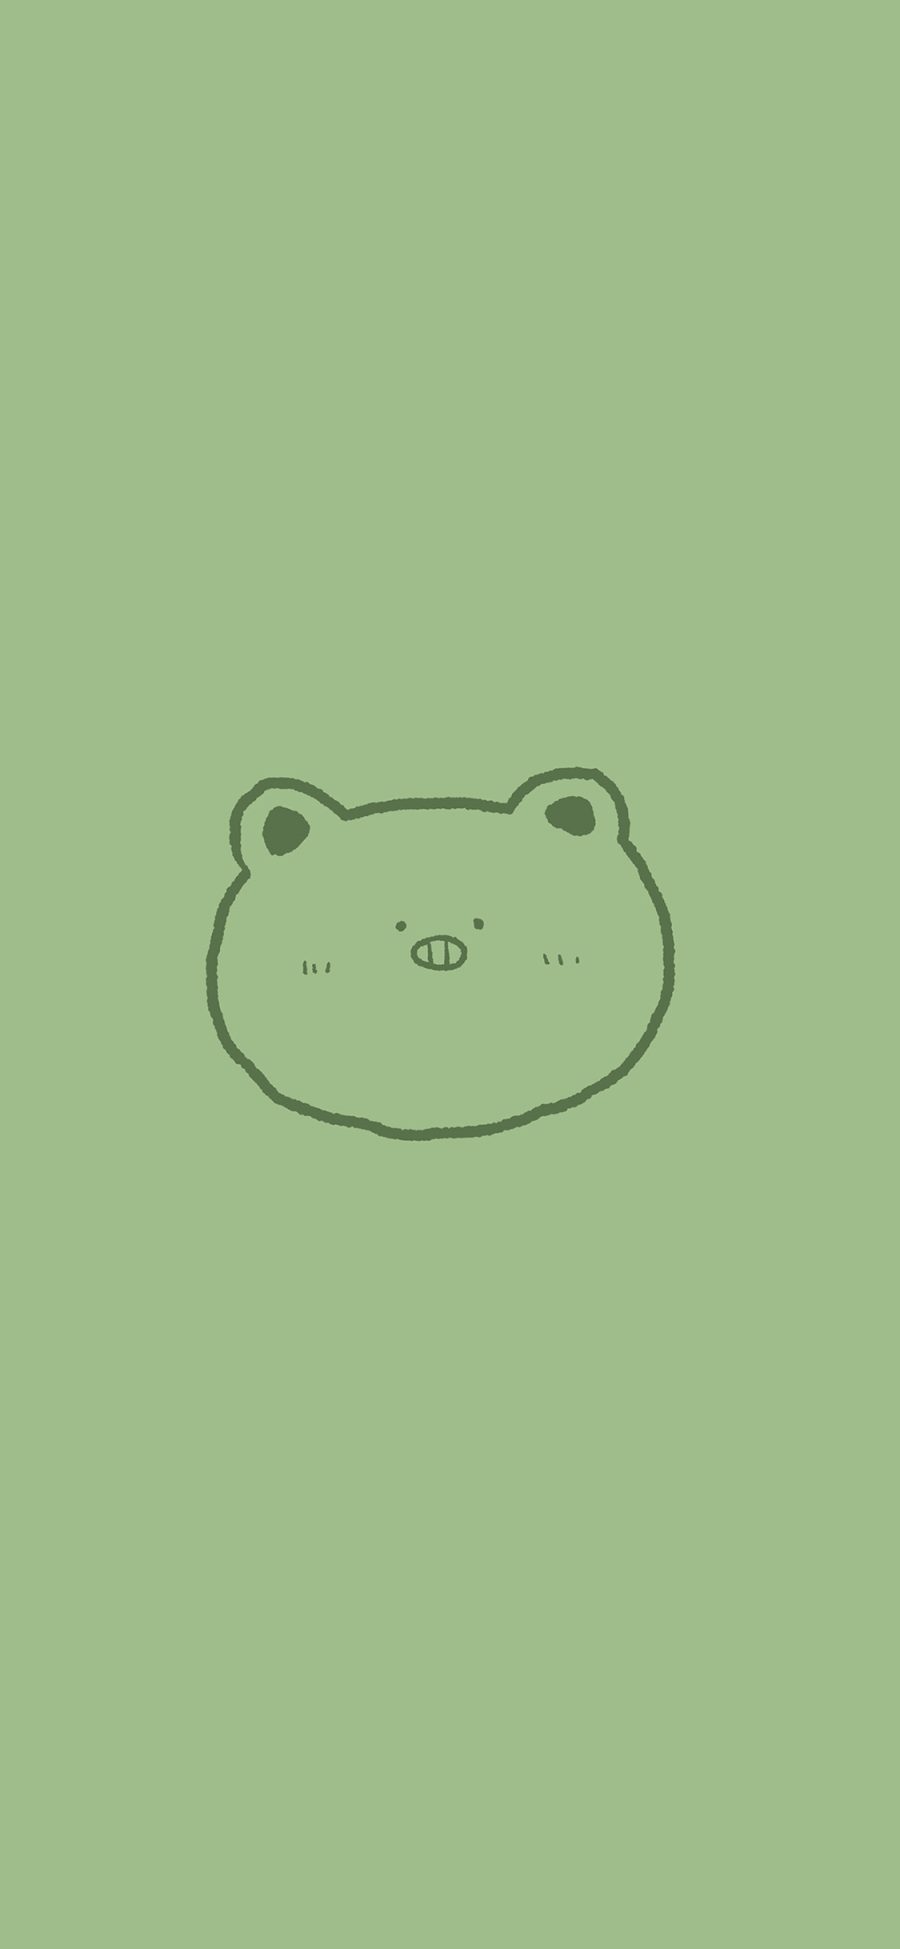 [2436×1125]绿色 背景 卡通 小熊 简笔 苹果手机动漫壁纸图片